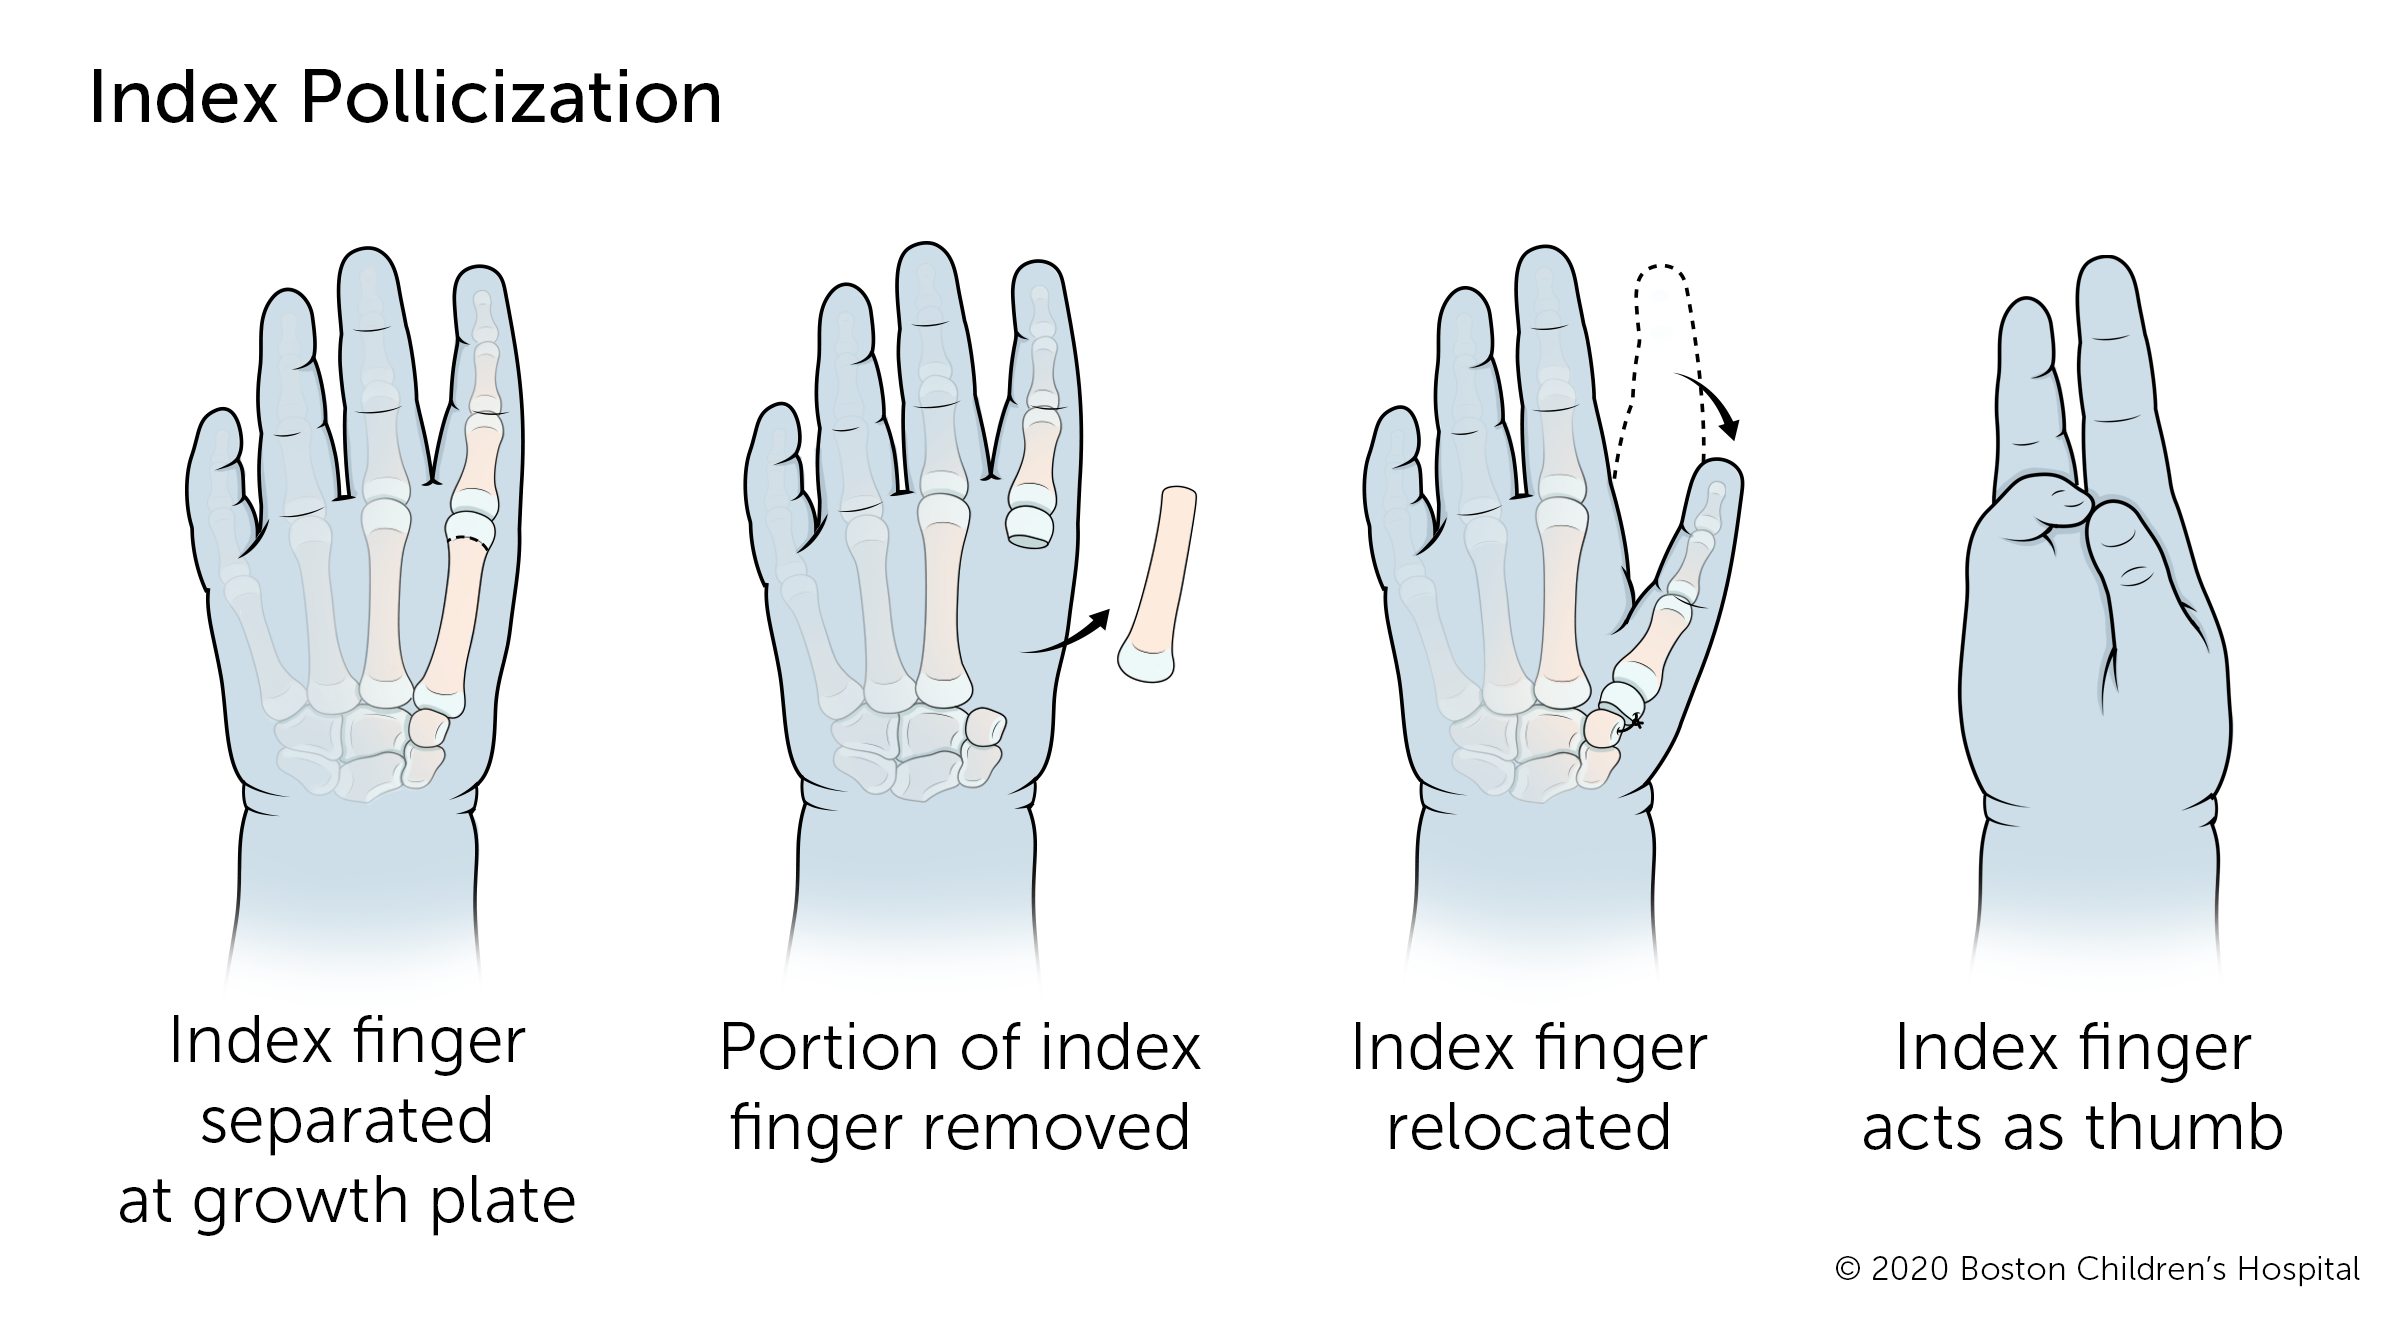 如果拇指完全缺失，则指数污染手术将食指移至拇指位置。食指在生长板上分离，手指的一部分从手中移开，其余的手指将其重新定位到可以用作拇指的地方。